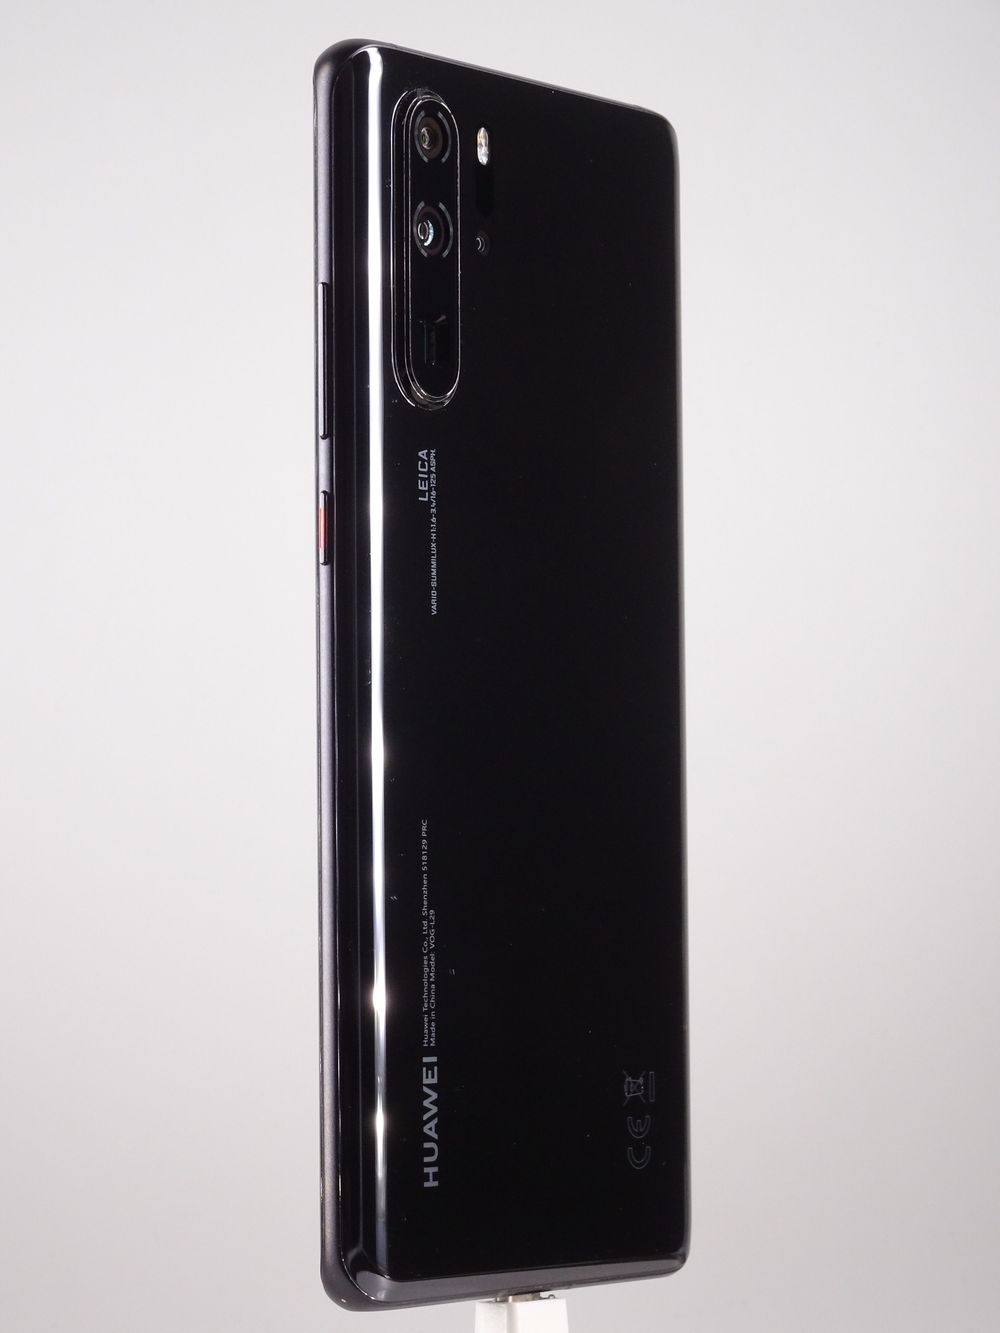 <span>Telefon mobil Huawei</span> P30 Pro Dual Sim<span class="sep">, </span> <span>Black, 128 GB,  Excelent</span>